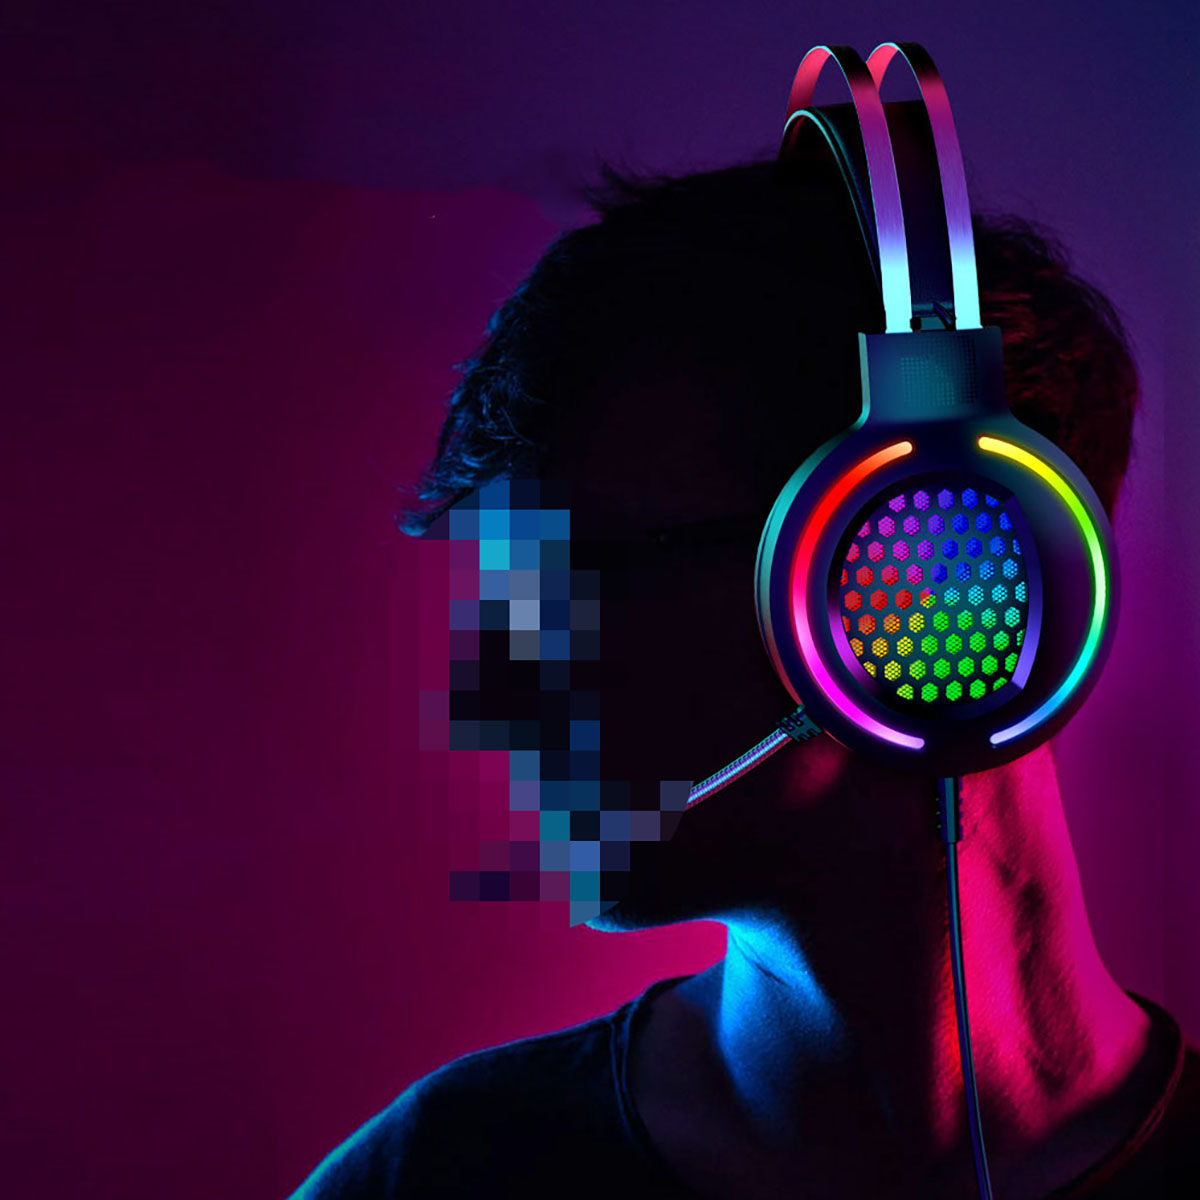 Design, geräuschunterdrückendes BYTELIKE Kopfbügel RGB-beleuchtet, Pinke Kopfhörer - Kopfhörer Over-ear rosa mit